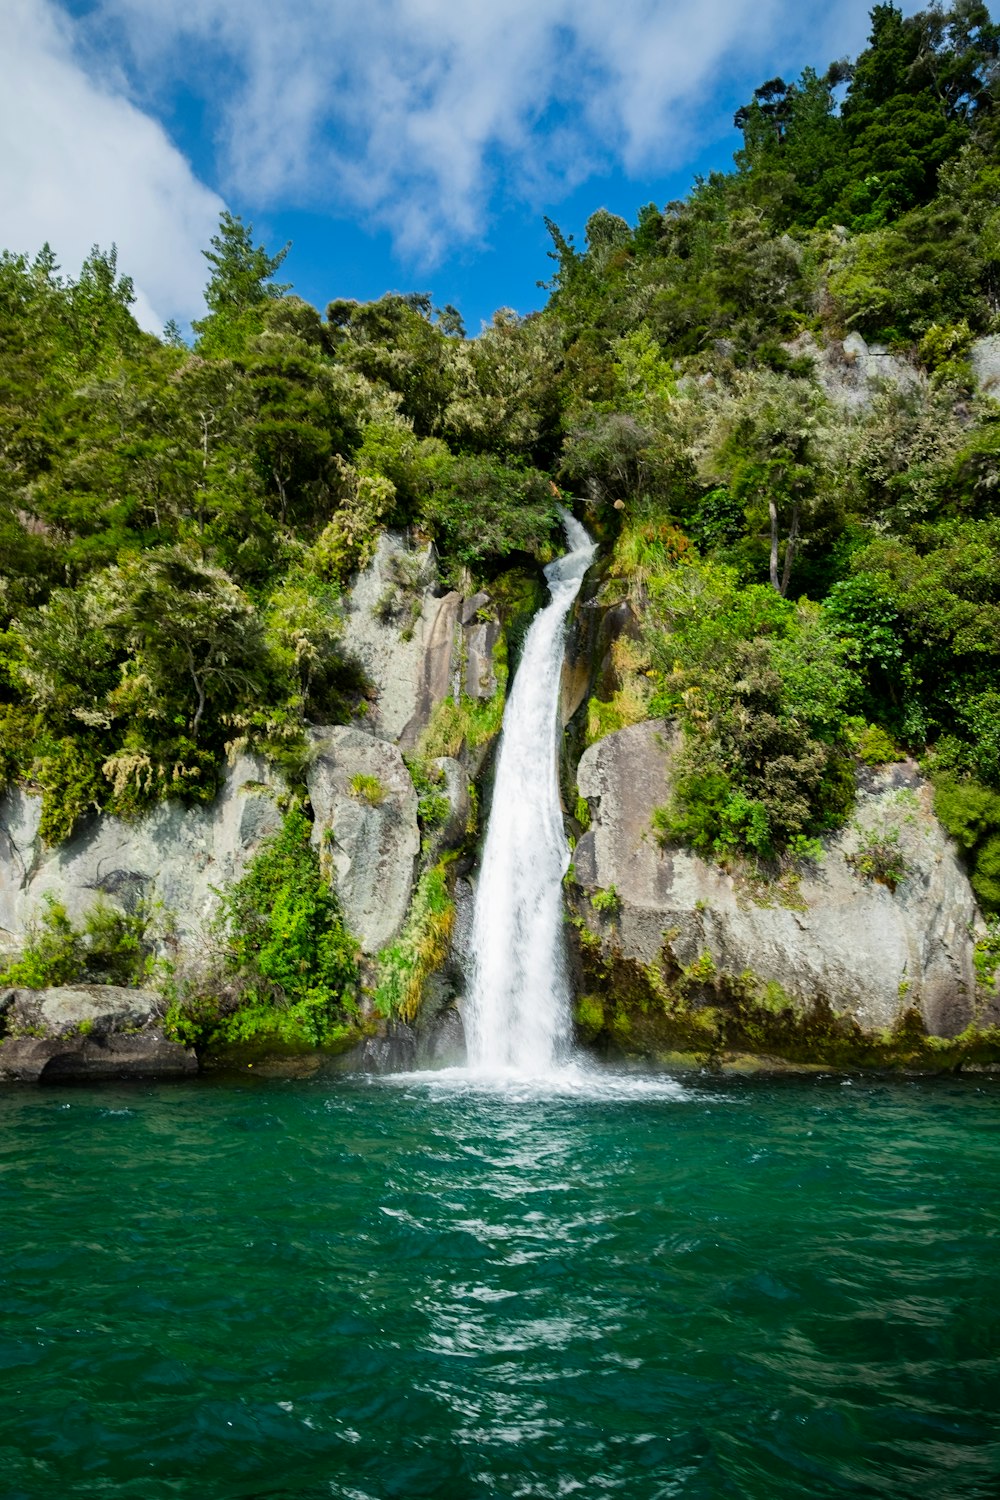 Wasserfälle, die tagsüber von grünbelaubten Bäumen umgeben sind